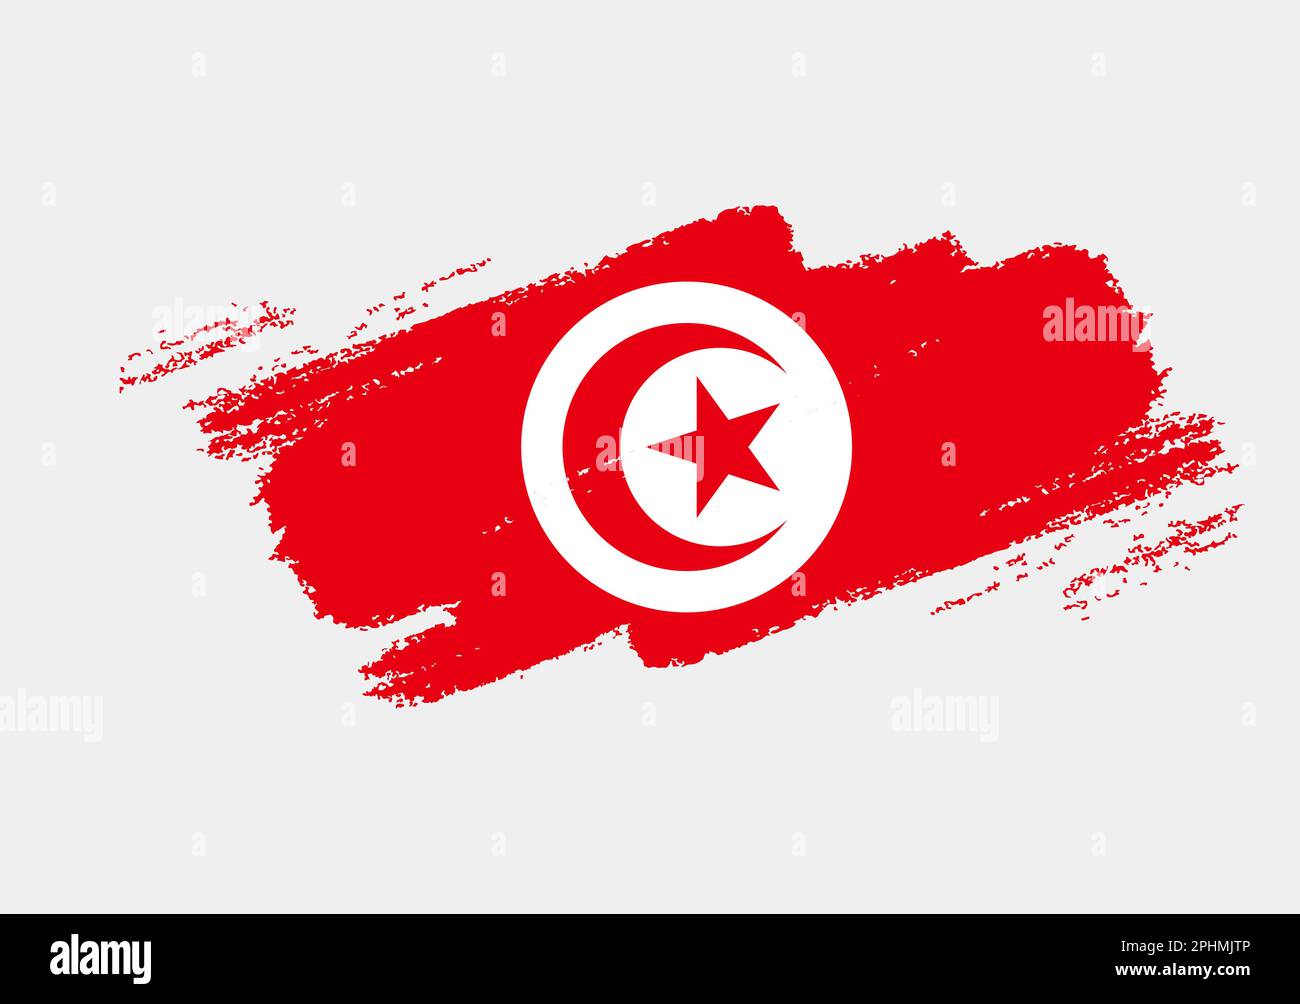 Grunge artistique drapeau de la Tunisie isolé sur fond blanc. Texture élégante du drapeau national Illustration de Vecteur